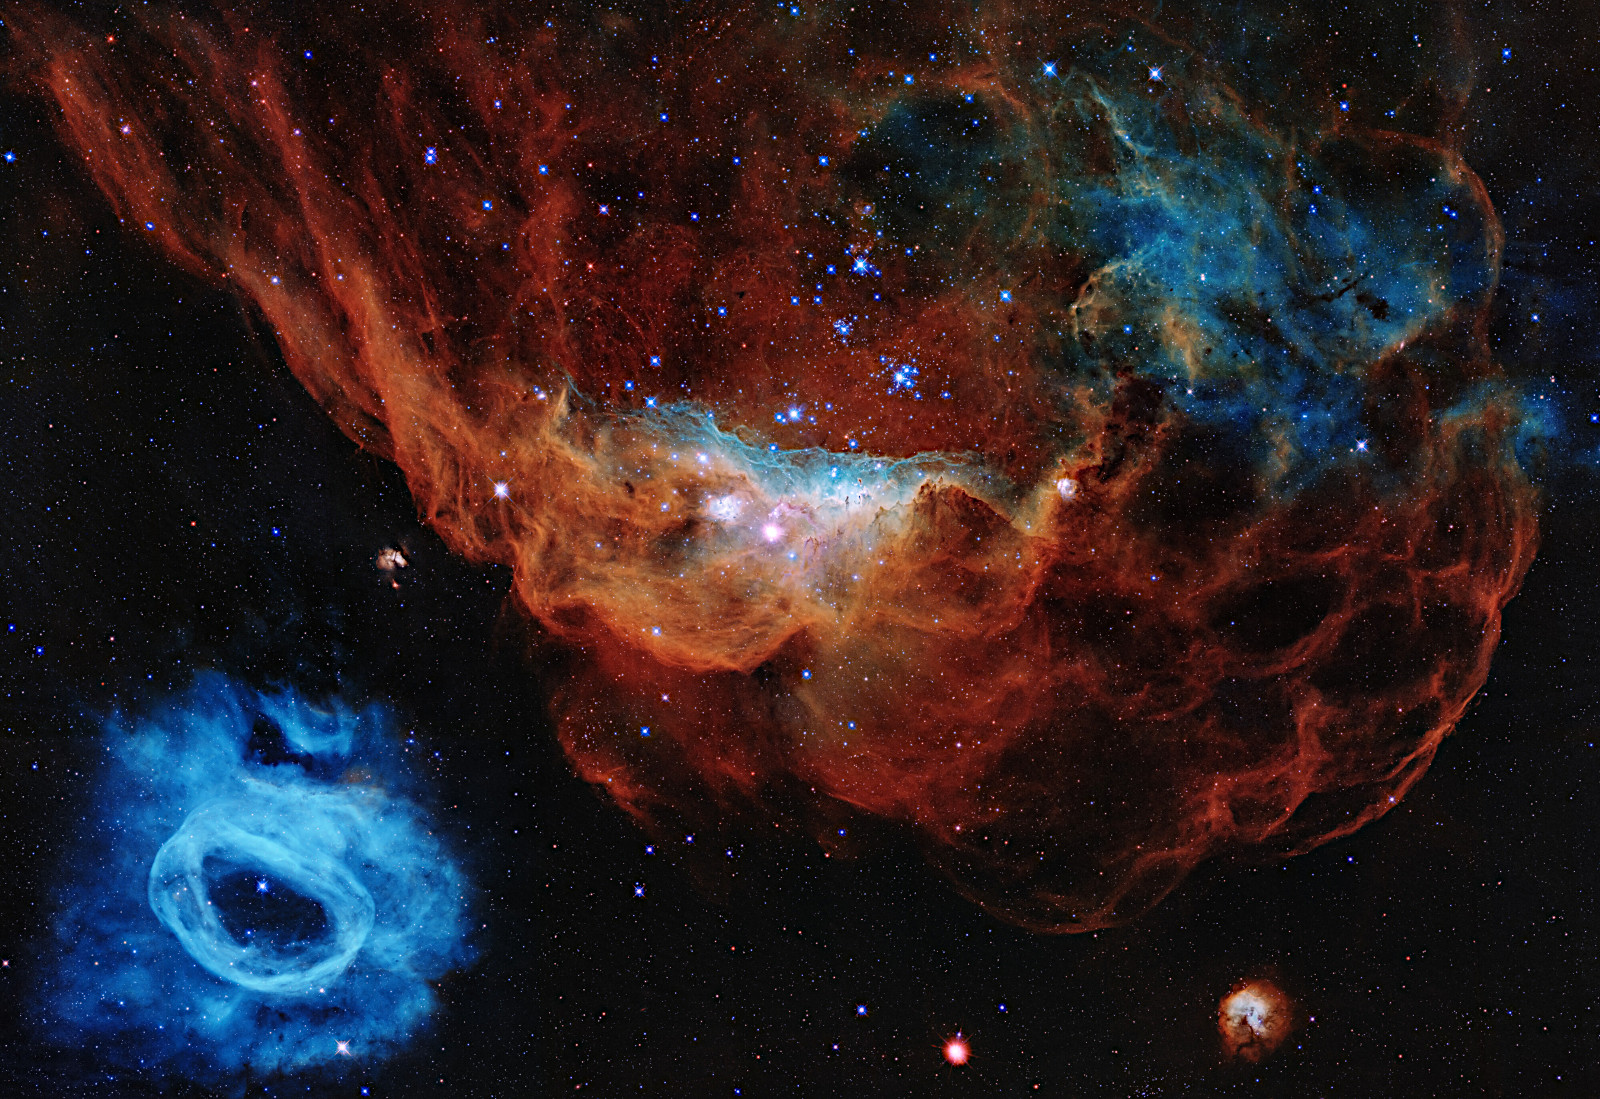 ハッブル打ち上げ30周年記念画像が公開 大マゼラン銀河の星形成領域 アストロピクス